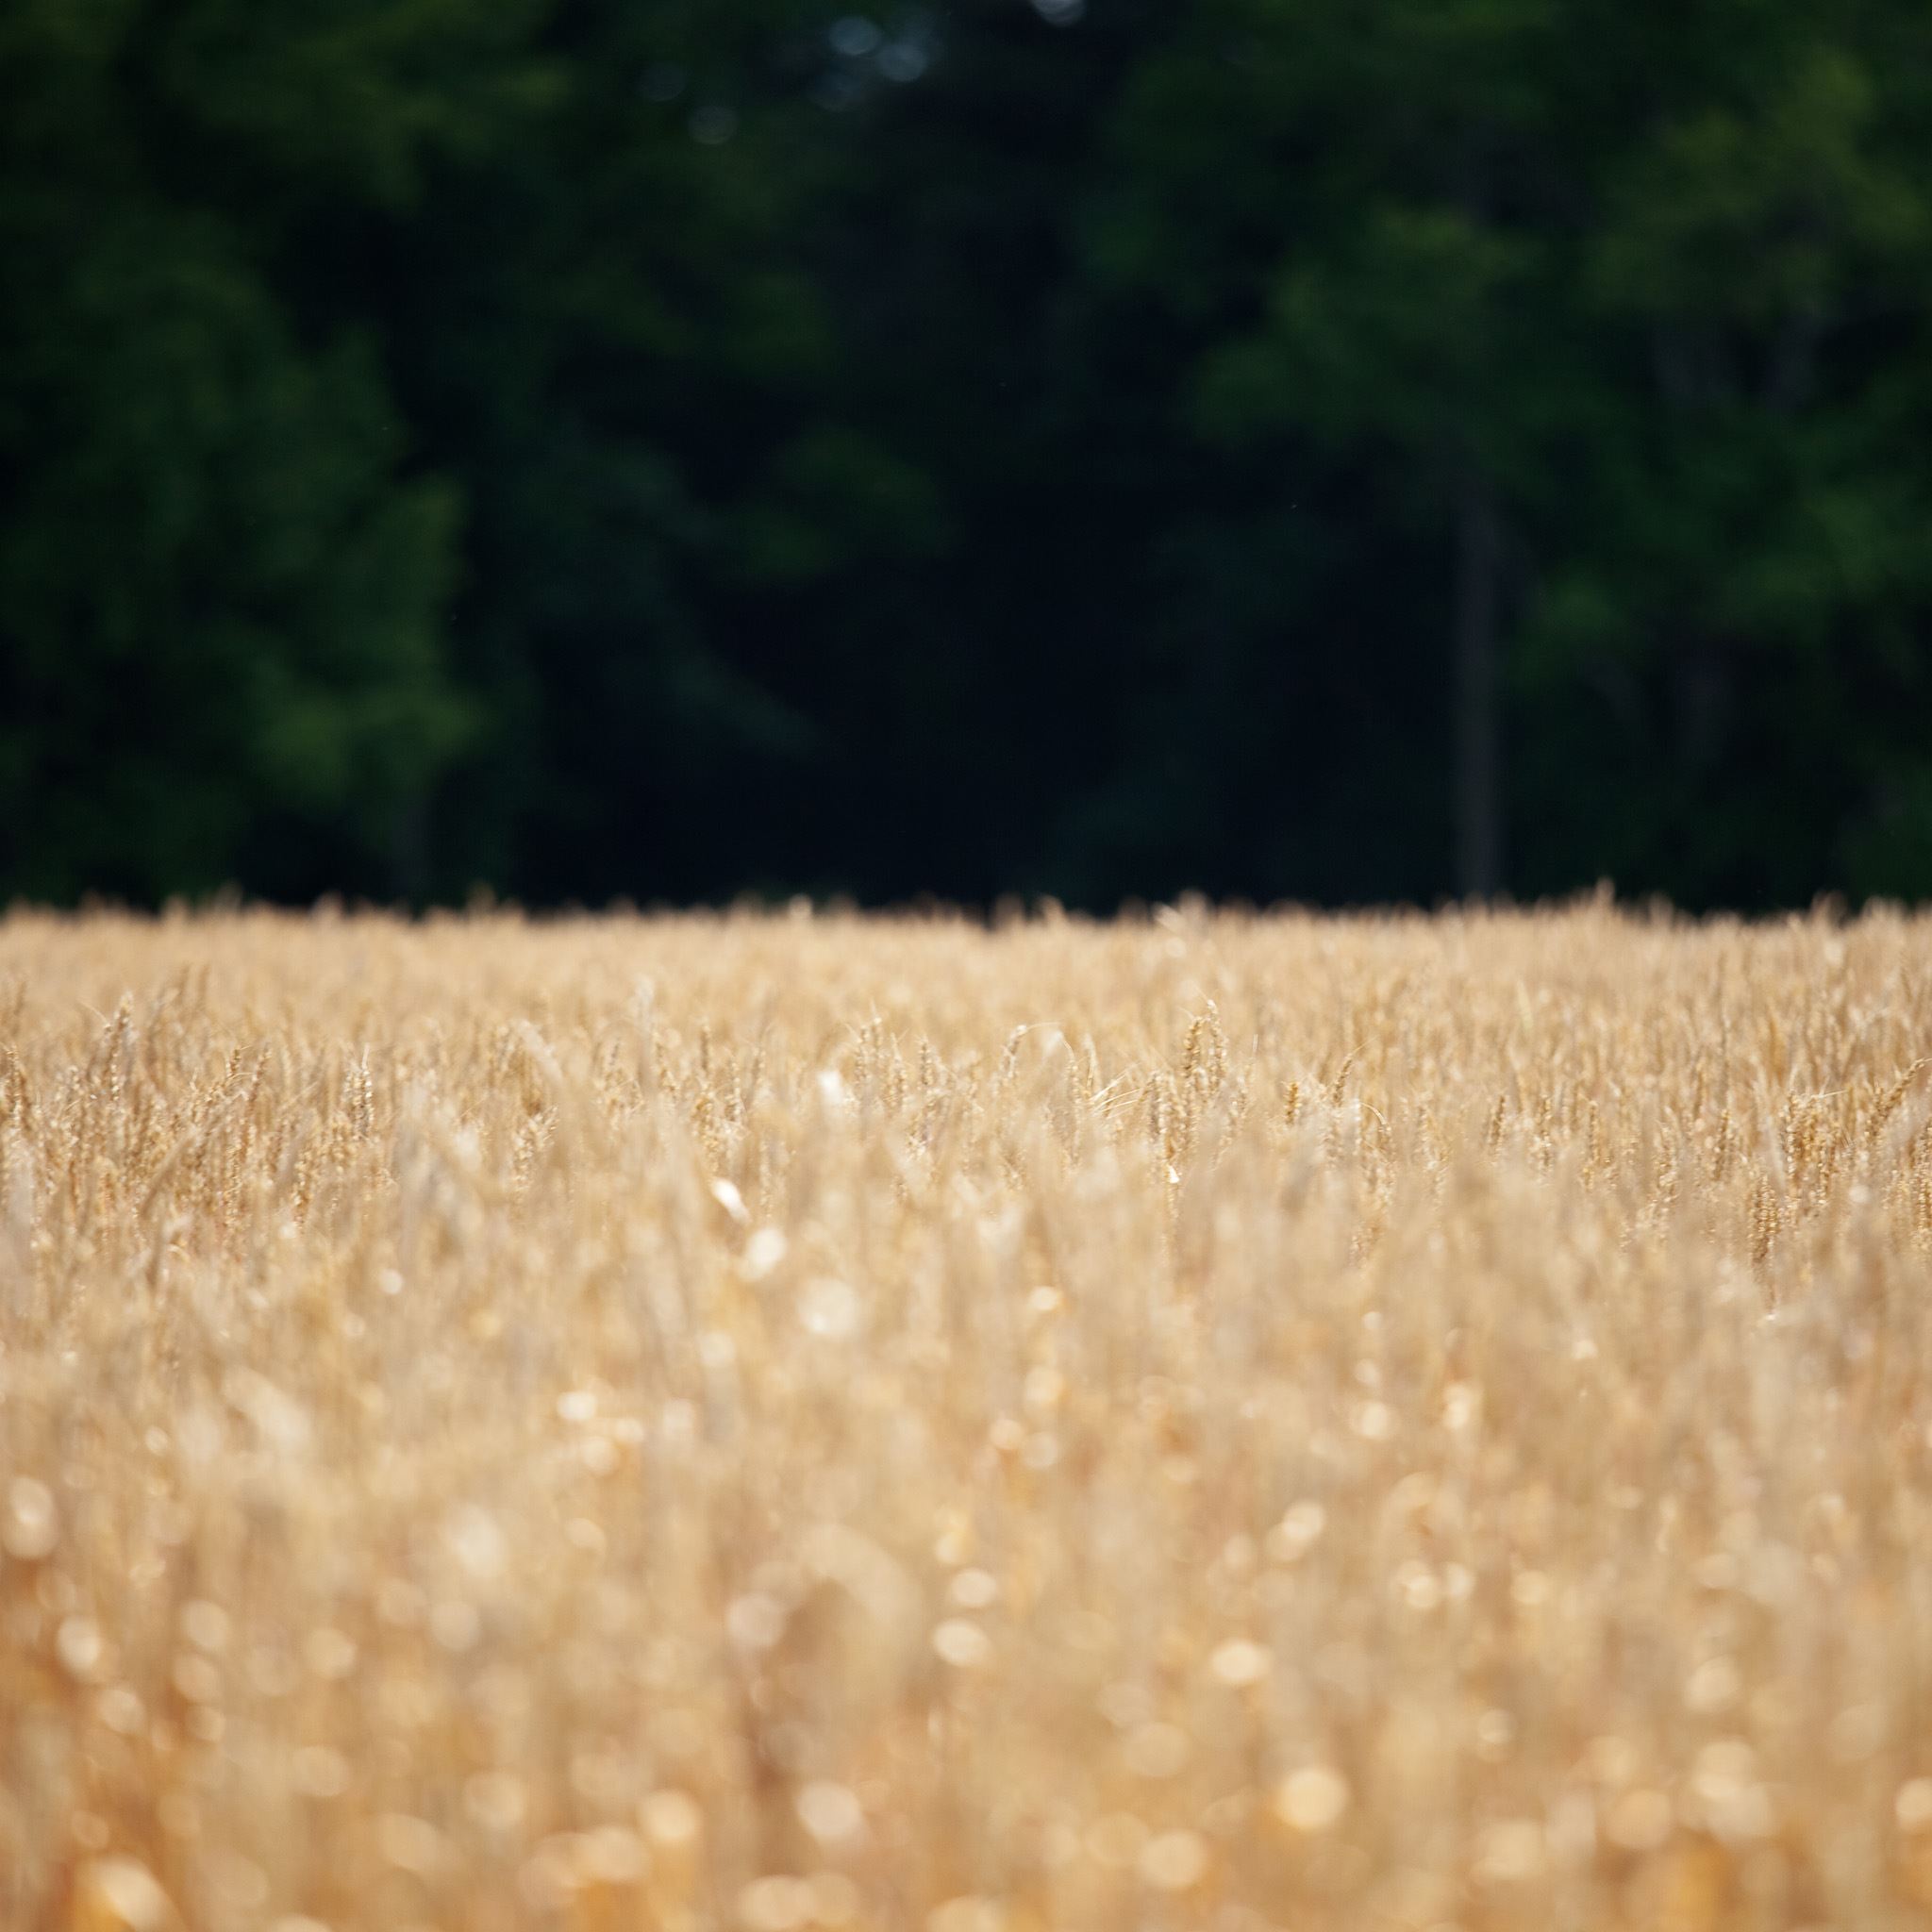 Pure Harvest Wheat Field iPad Air wallpaper 